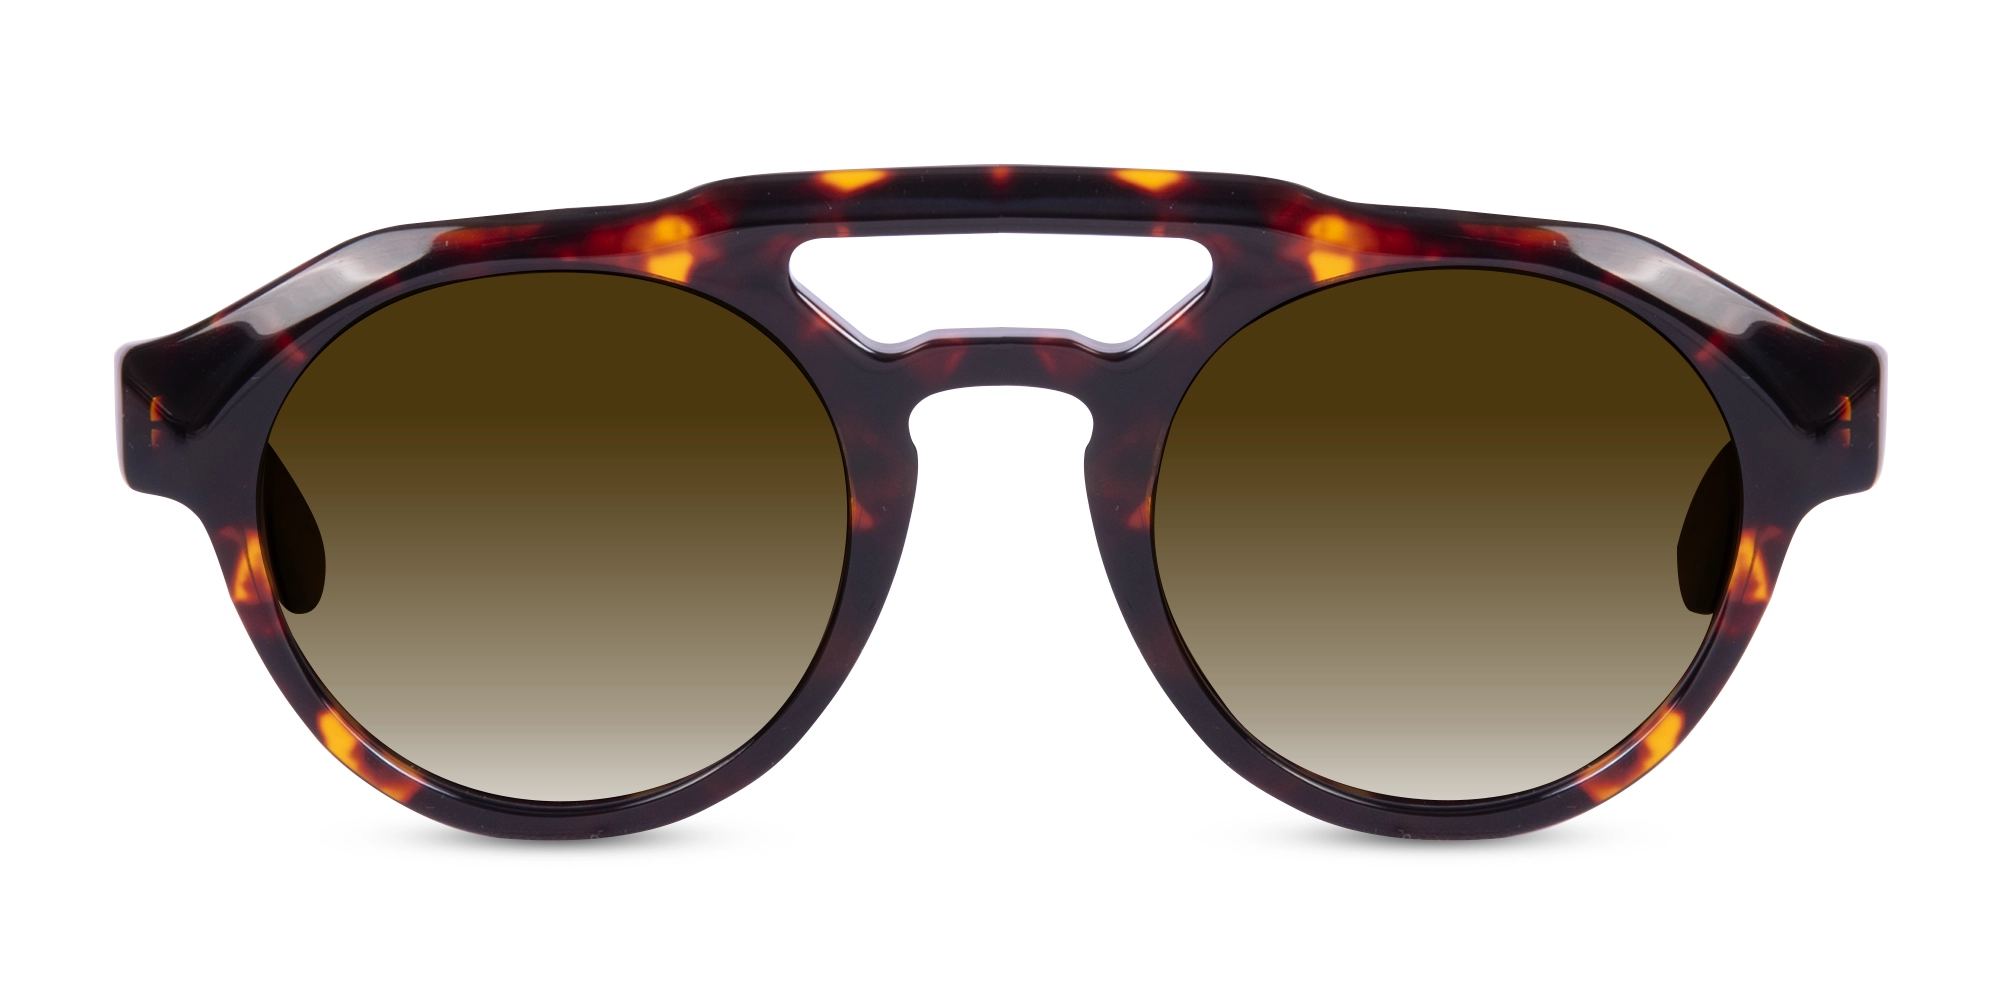 Tortoiseshell Pilot Sunglasses